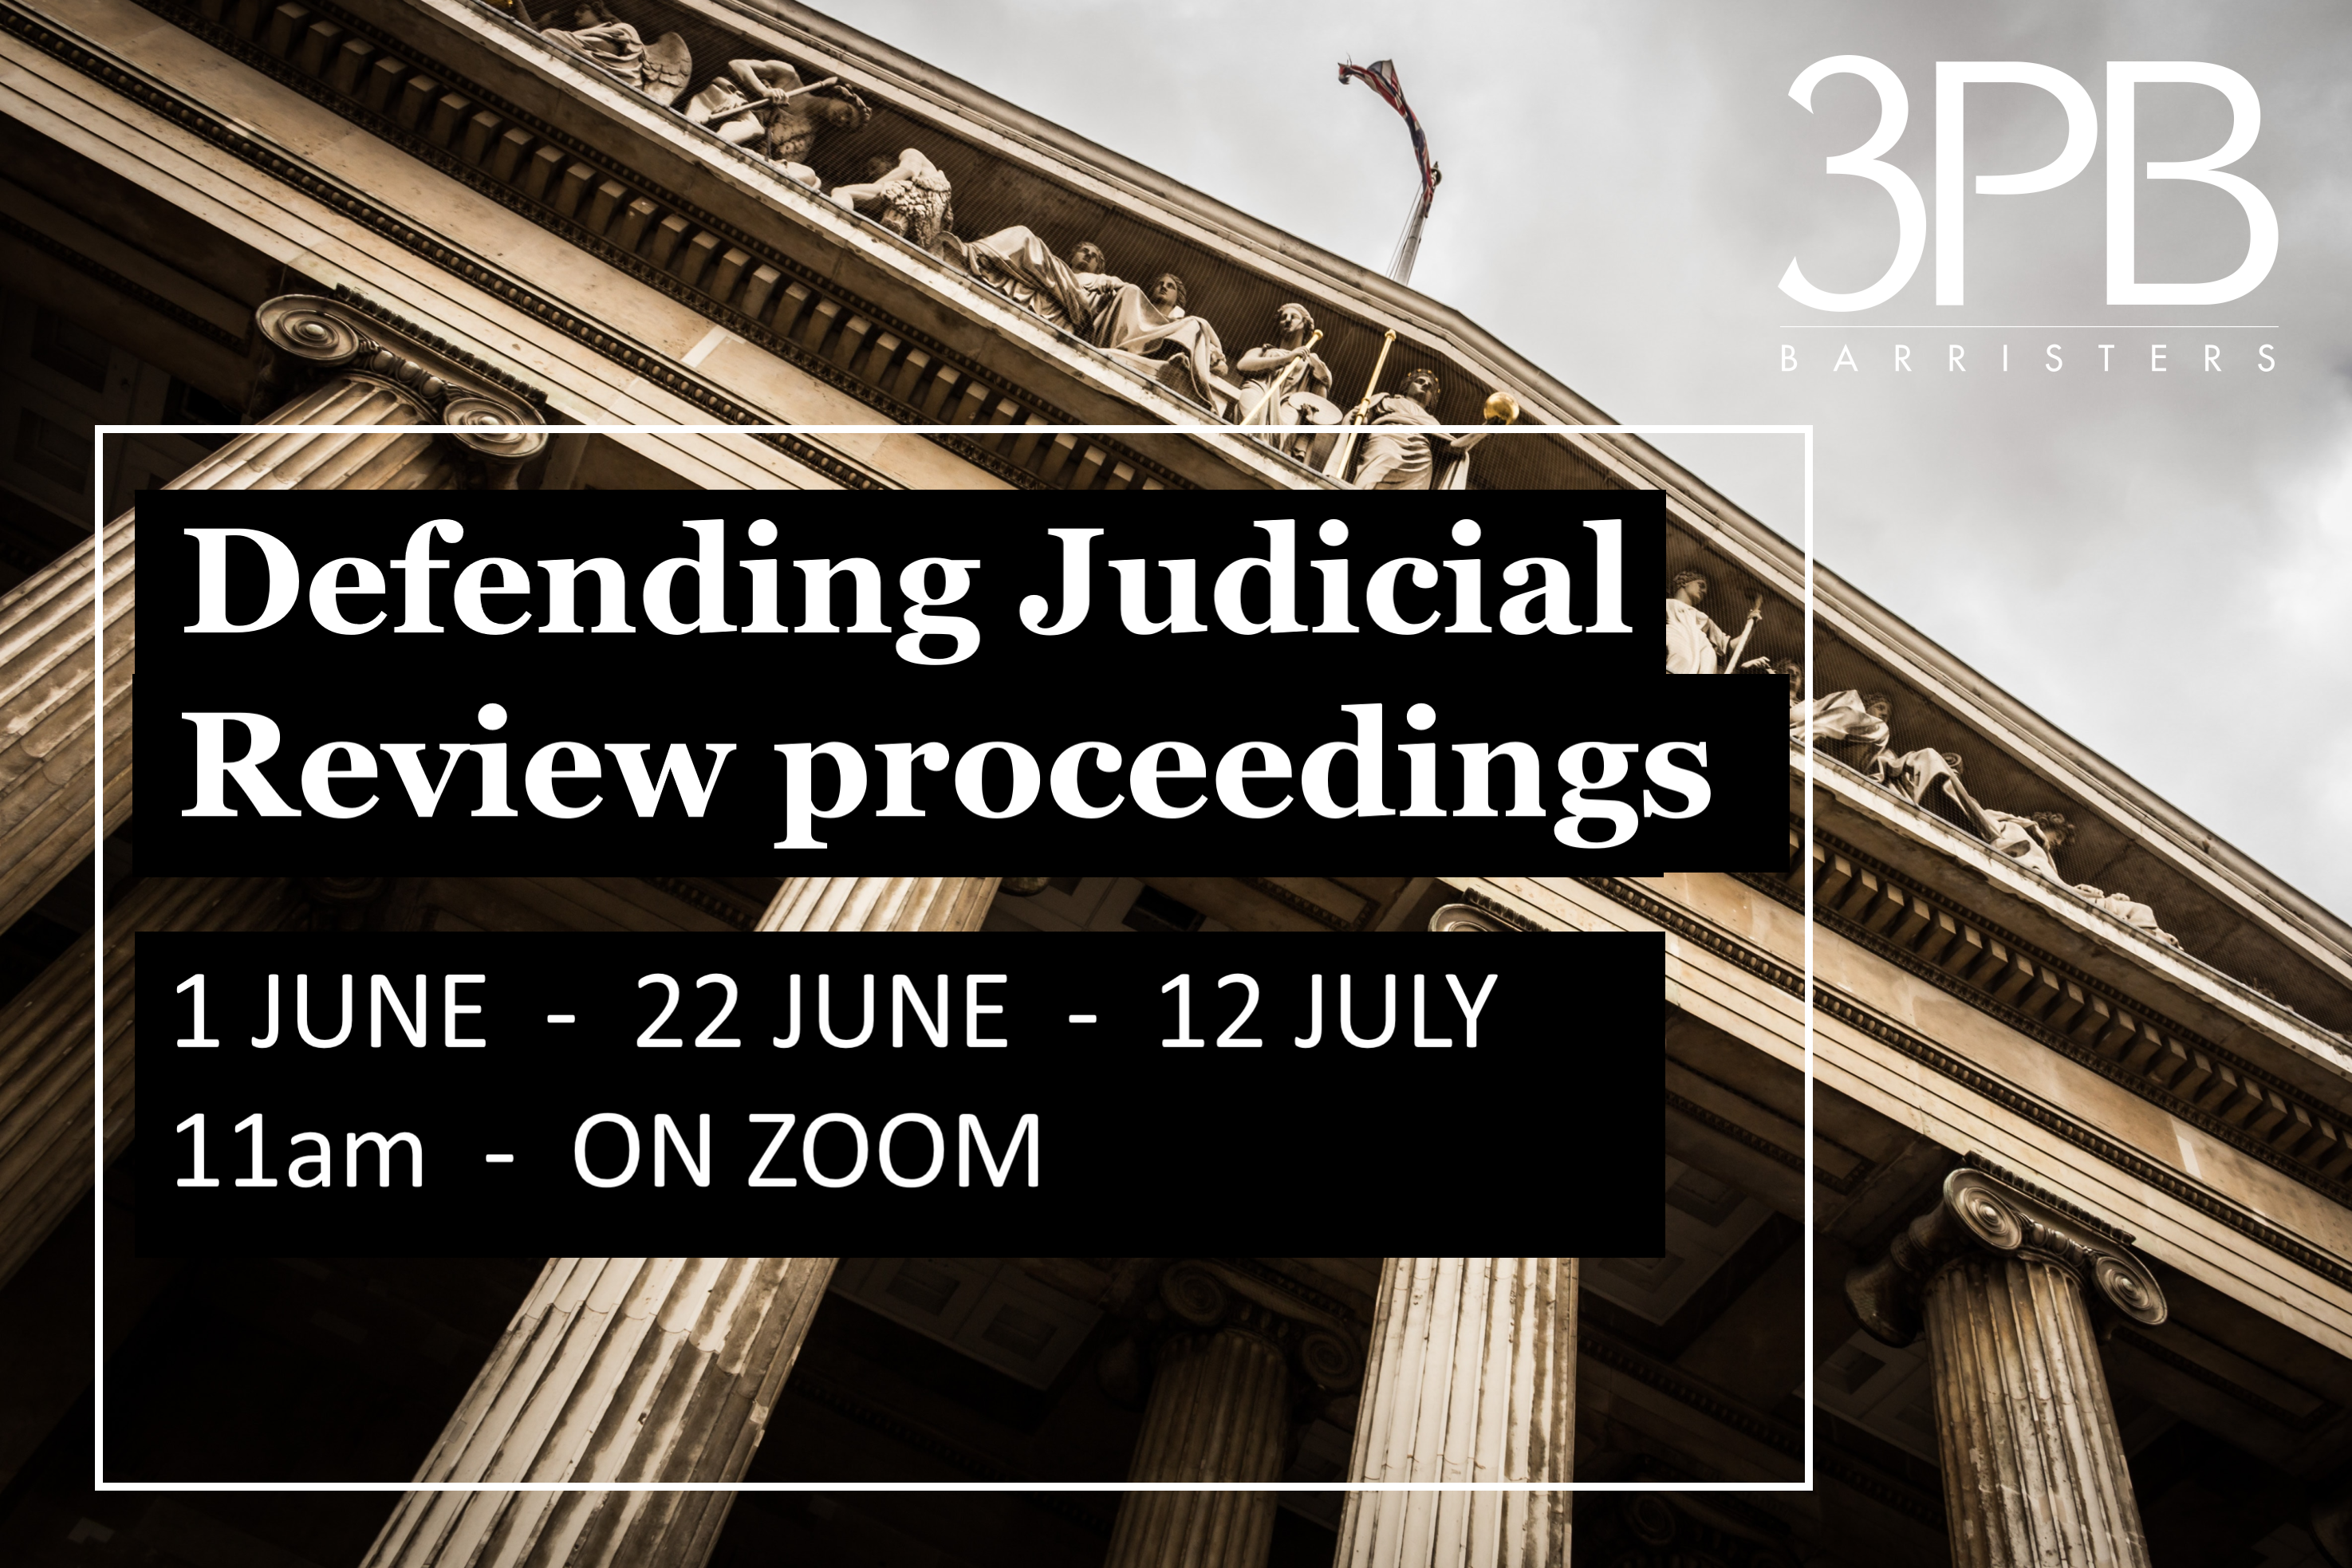 3PB's defending judicial review proceedings webinar series